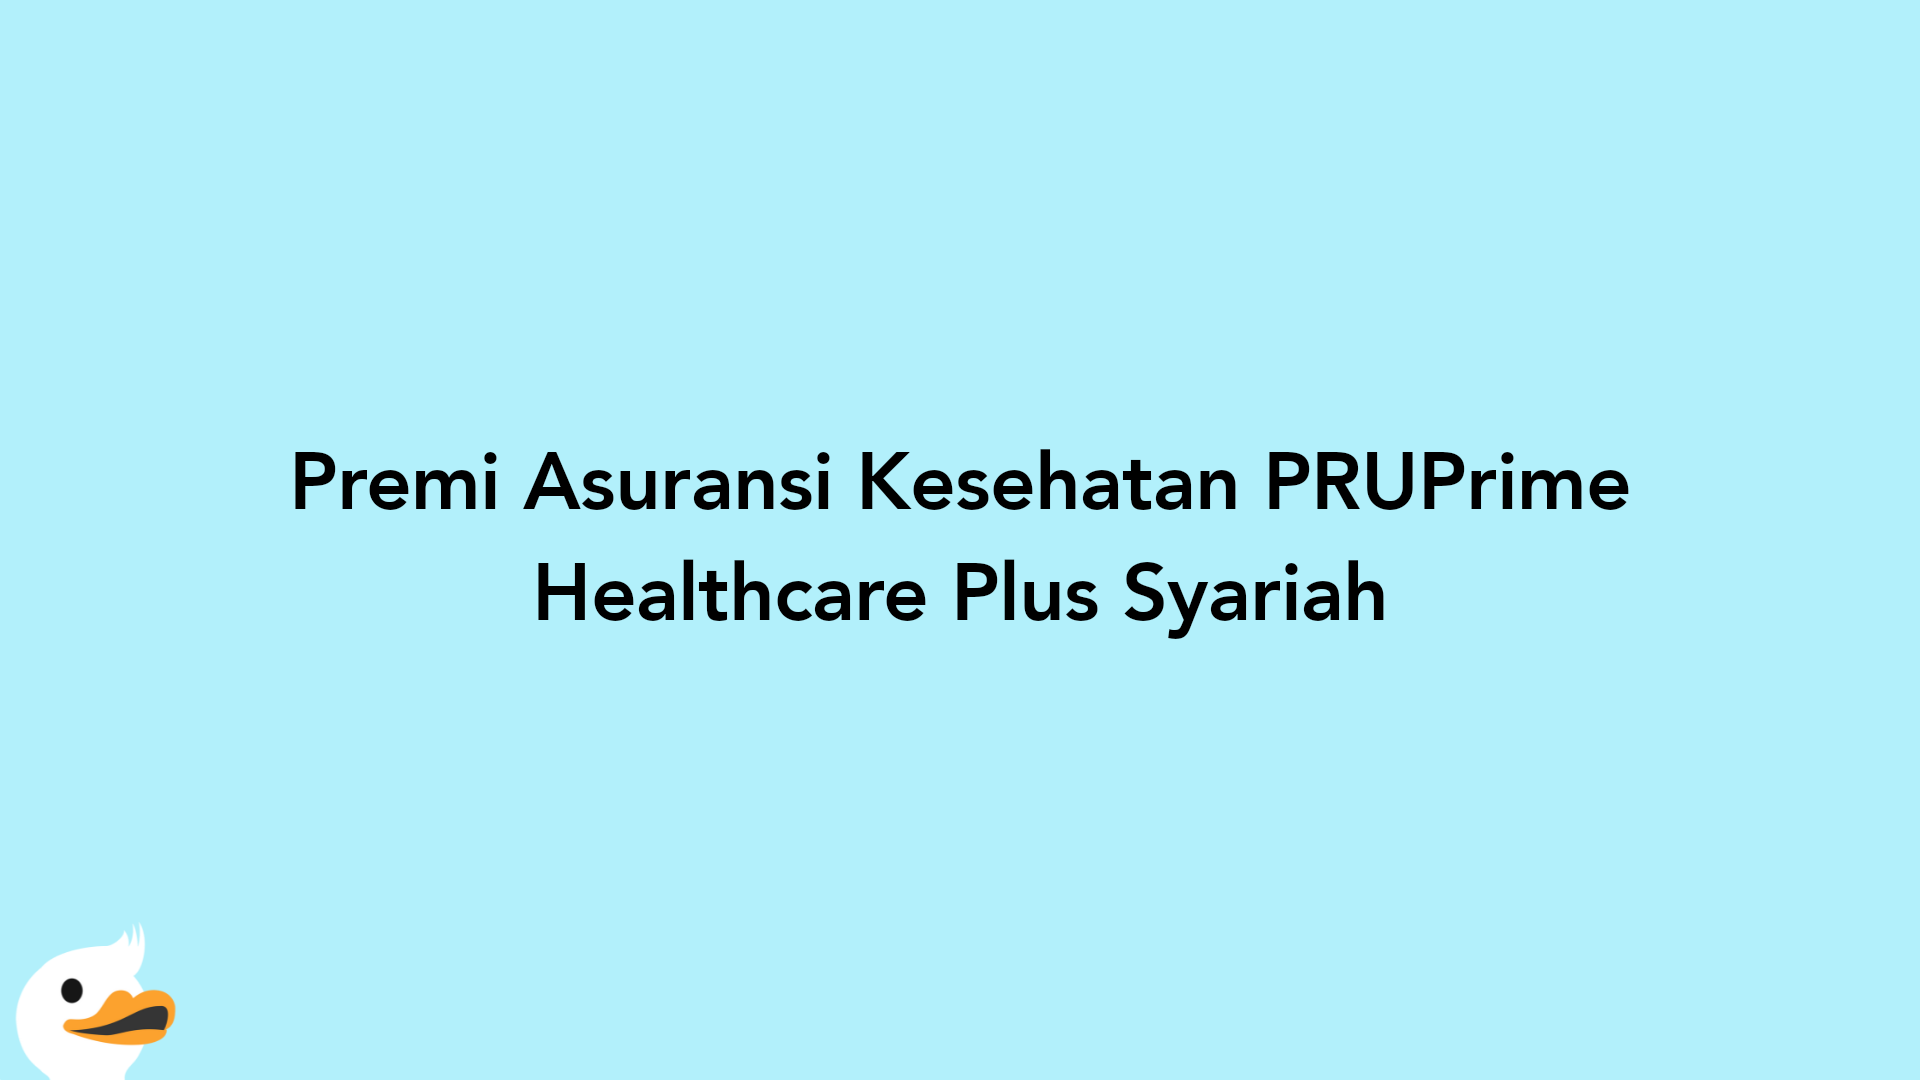 Premi Asuransi Kesehatan PRUPrime Healthcare Plus Syariah